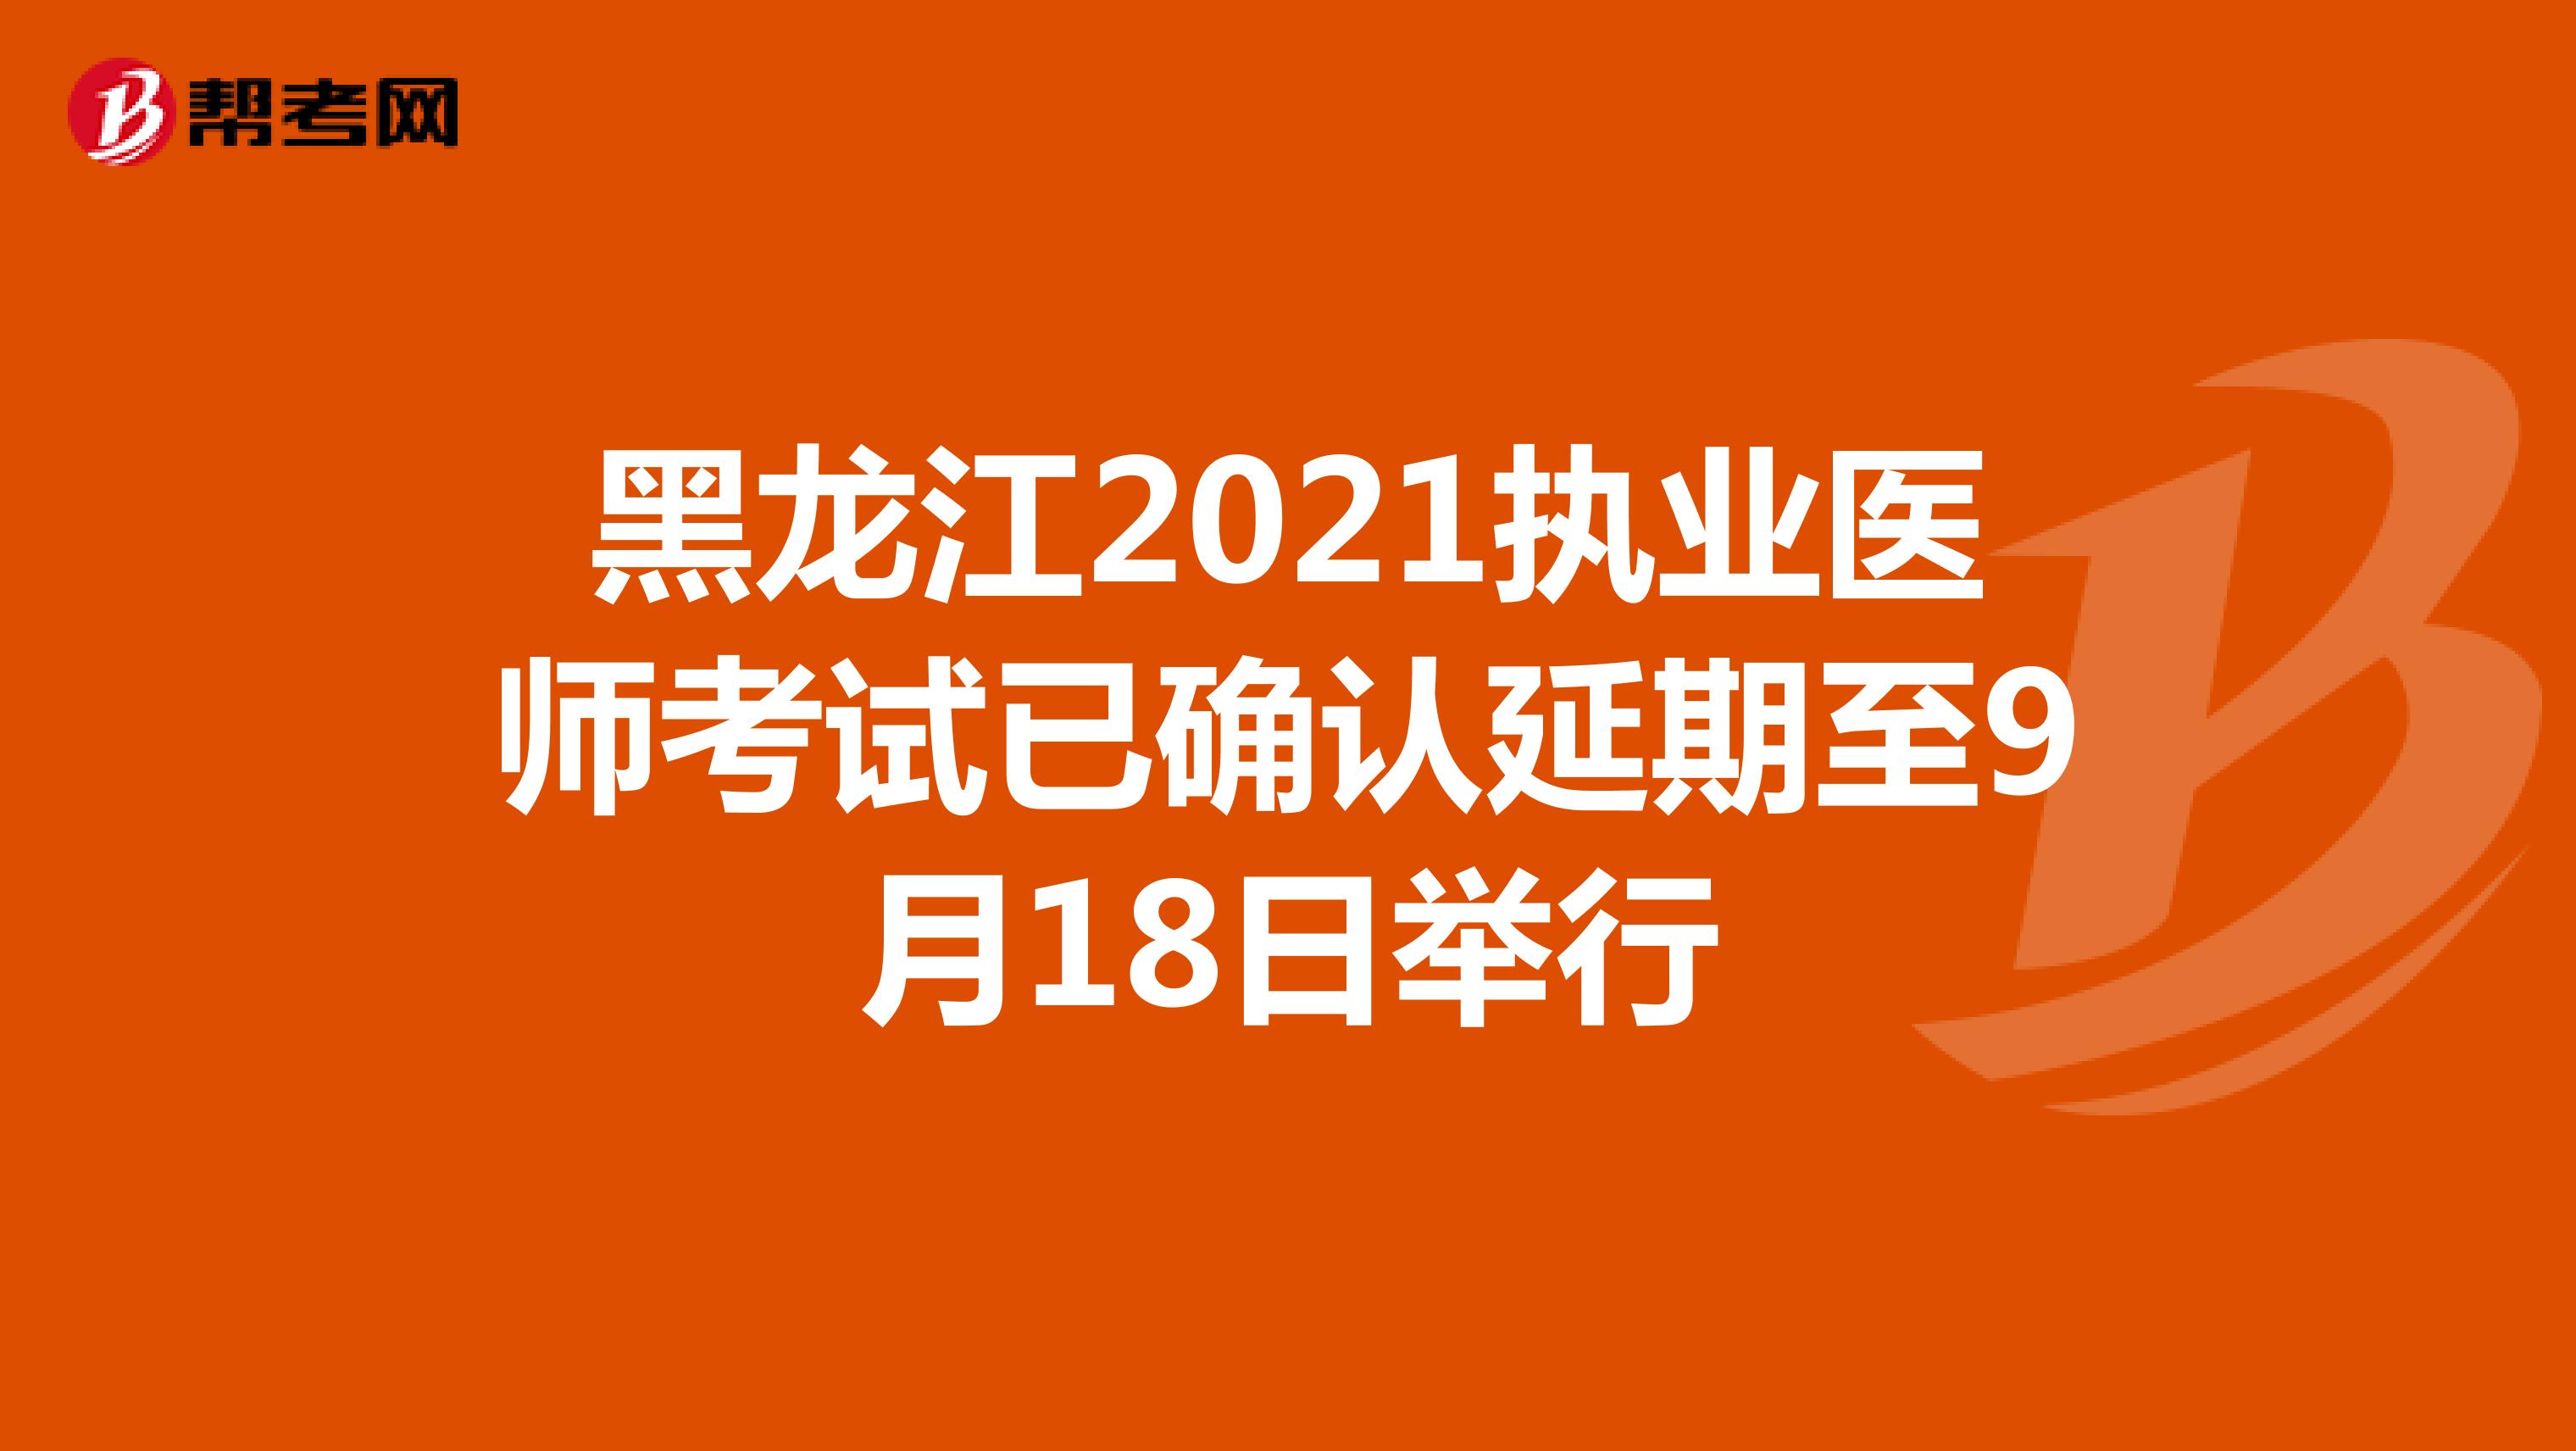 黑龙江2021执业医师考试已确认延期至9月18日举行